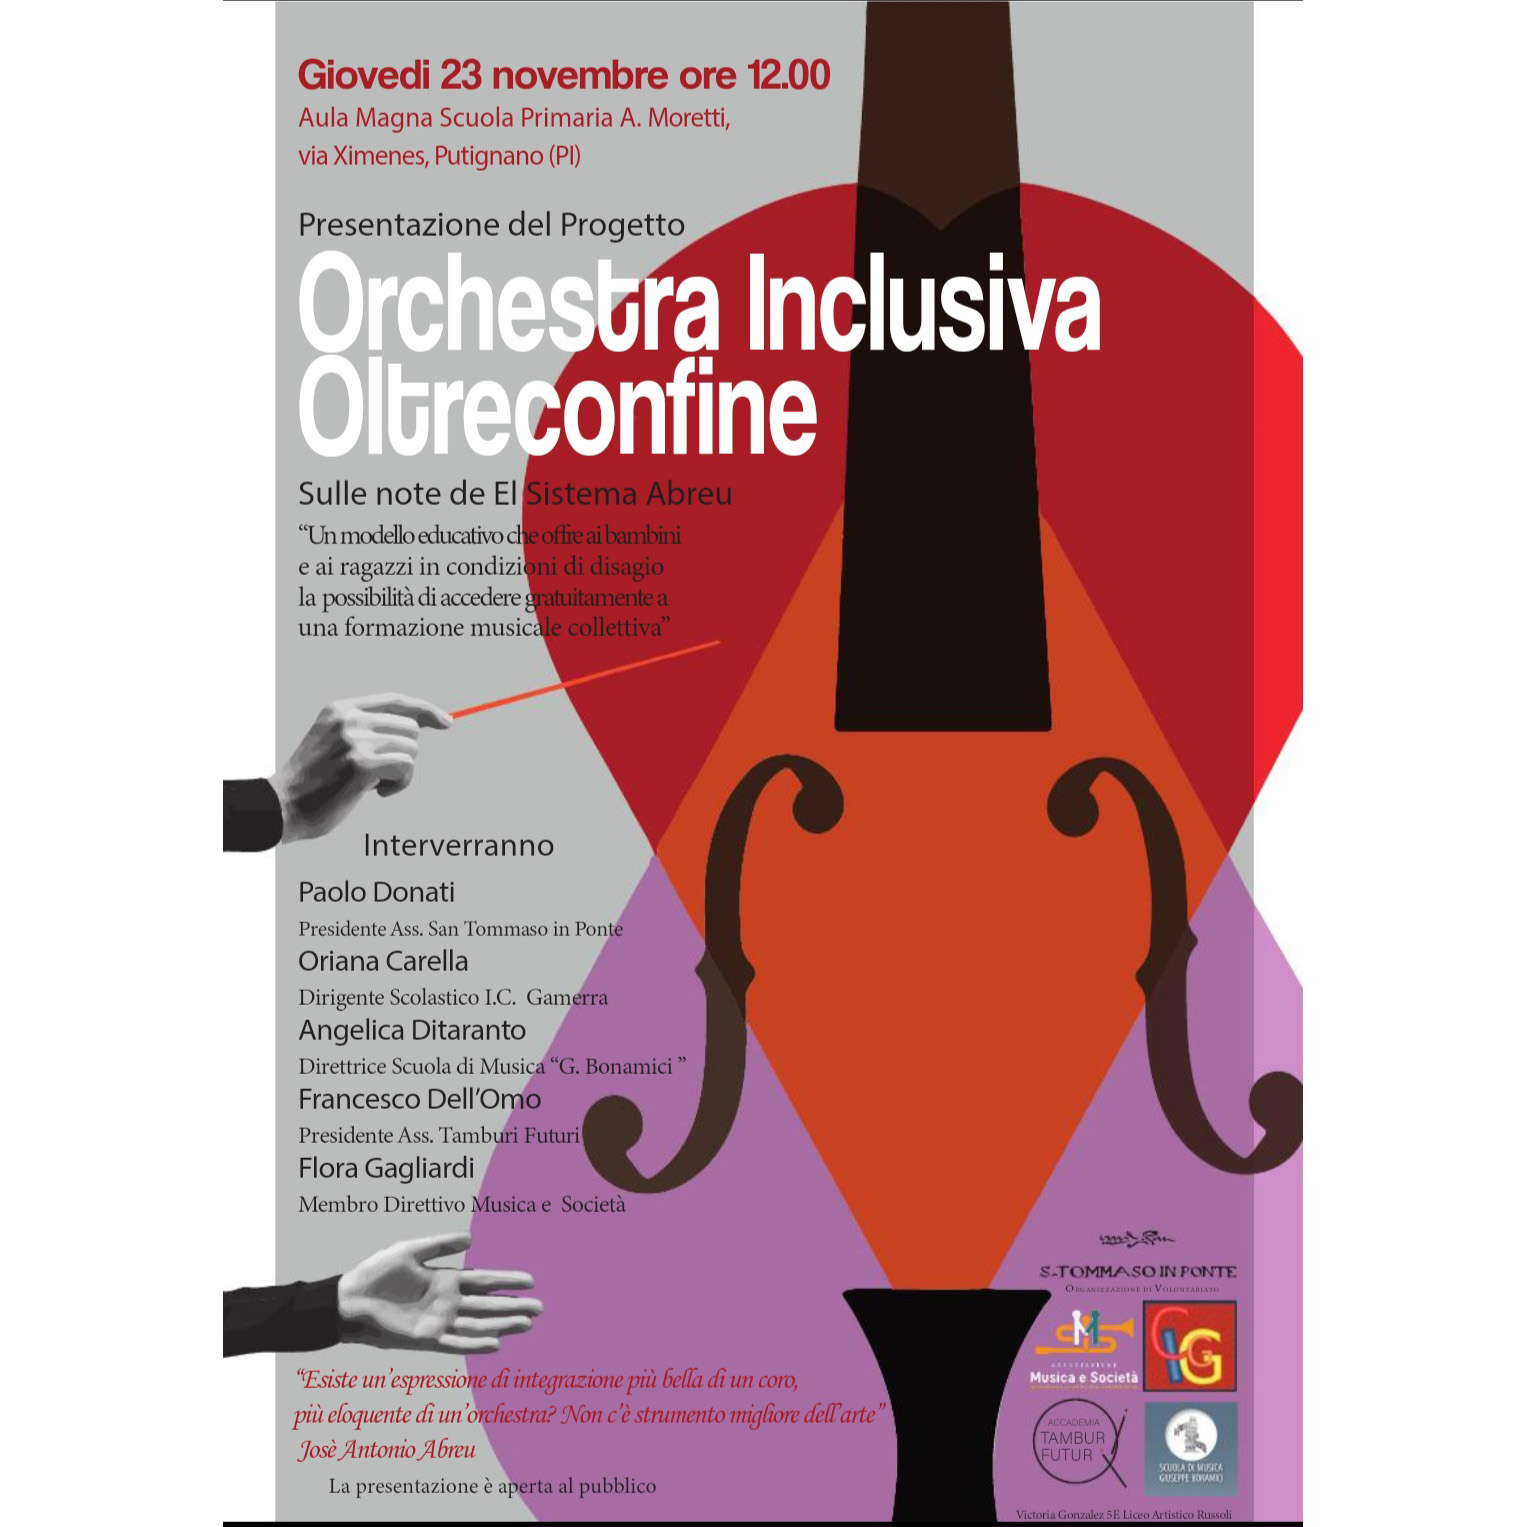 Orchestra Inclusiva OltreConfine